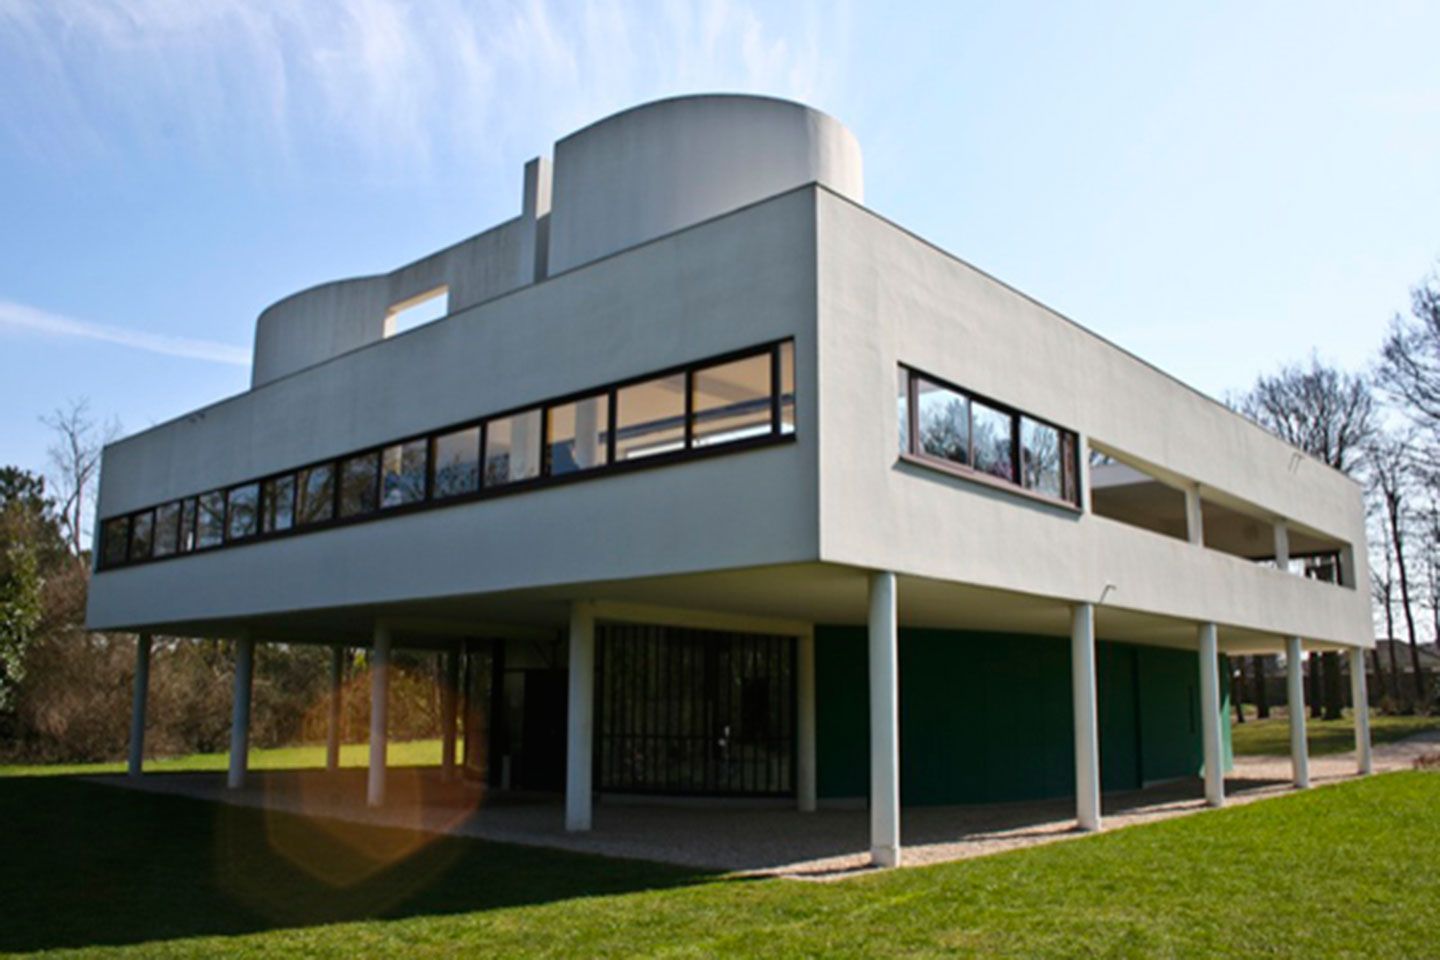 Legítimo Extranjero Mismo Tour en París - Arquitectura moderna: Le Corbusier -Artchitectours